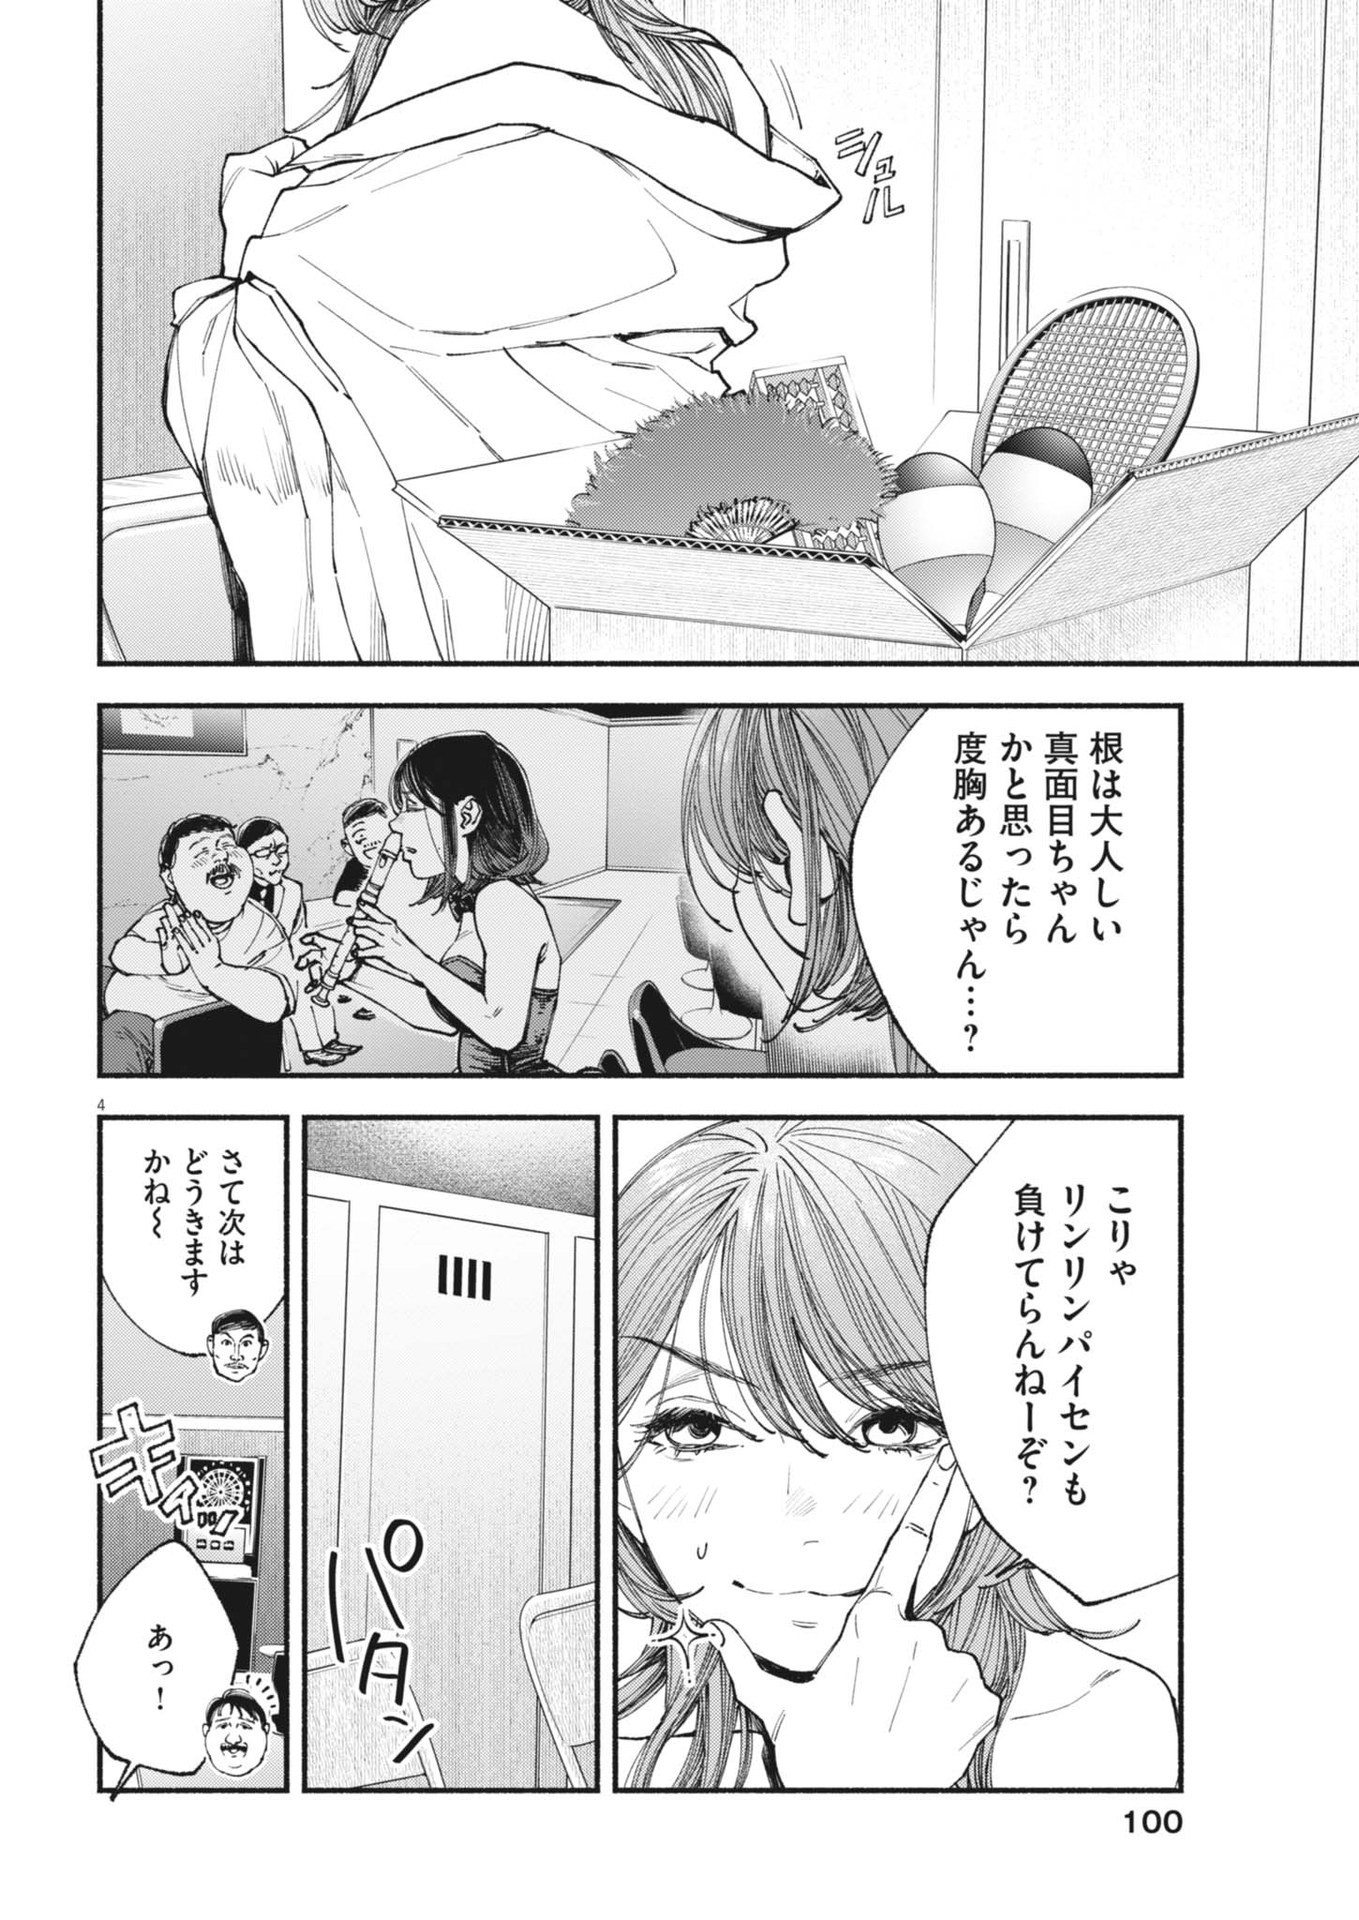 Konoyo wa Tatakau Kachi ga Aru  - Chapter 22 - Page 4